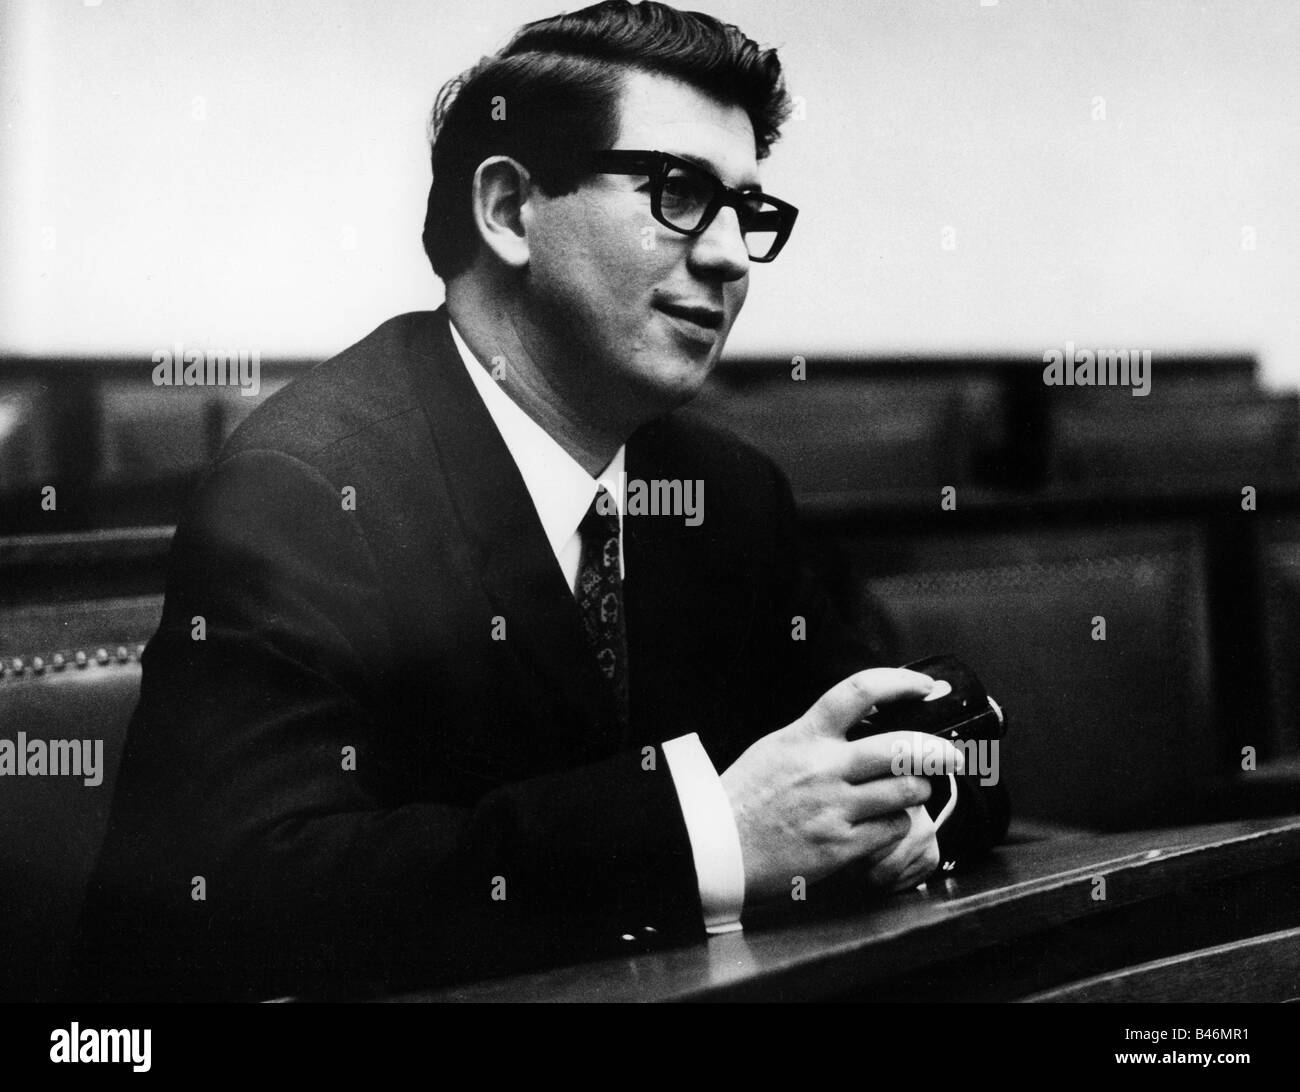 Schoefberger, Rudolf, * 29.7.1935, politico tedesco (DOCUP), membro del Parlamento bavarese 1966 - 1972, nella sala dell'Assemblea, Monaco, circa 1970, Foto Stock